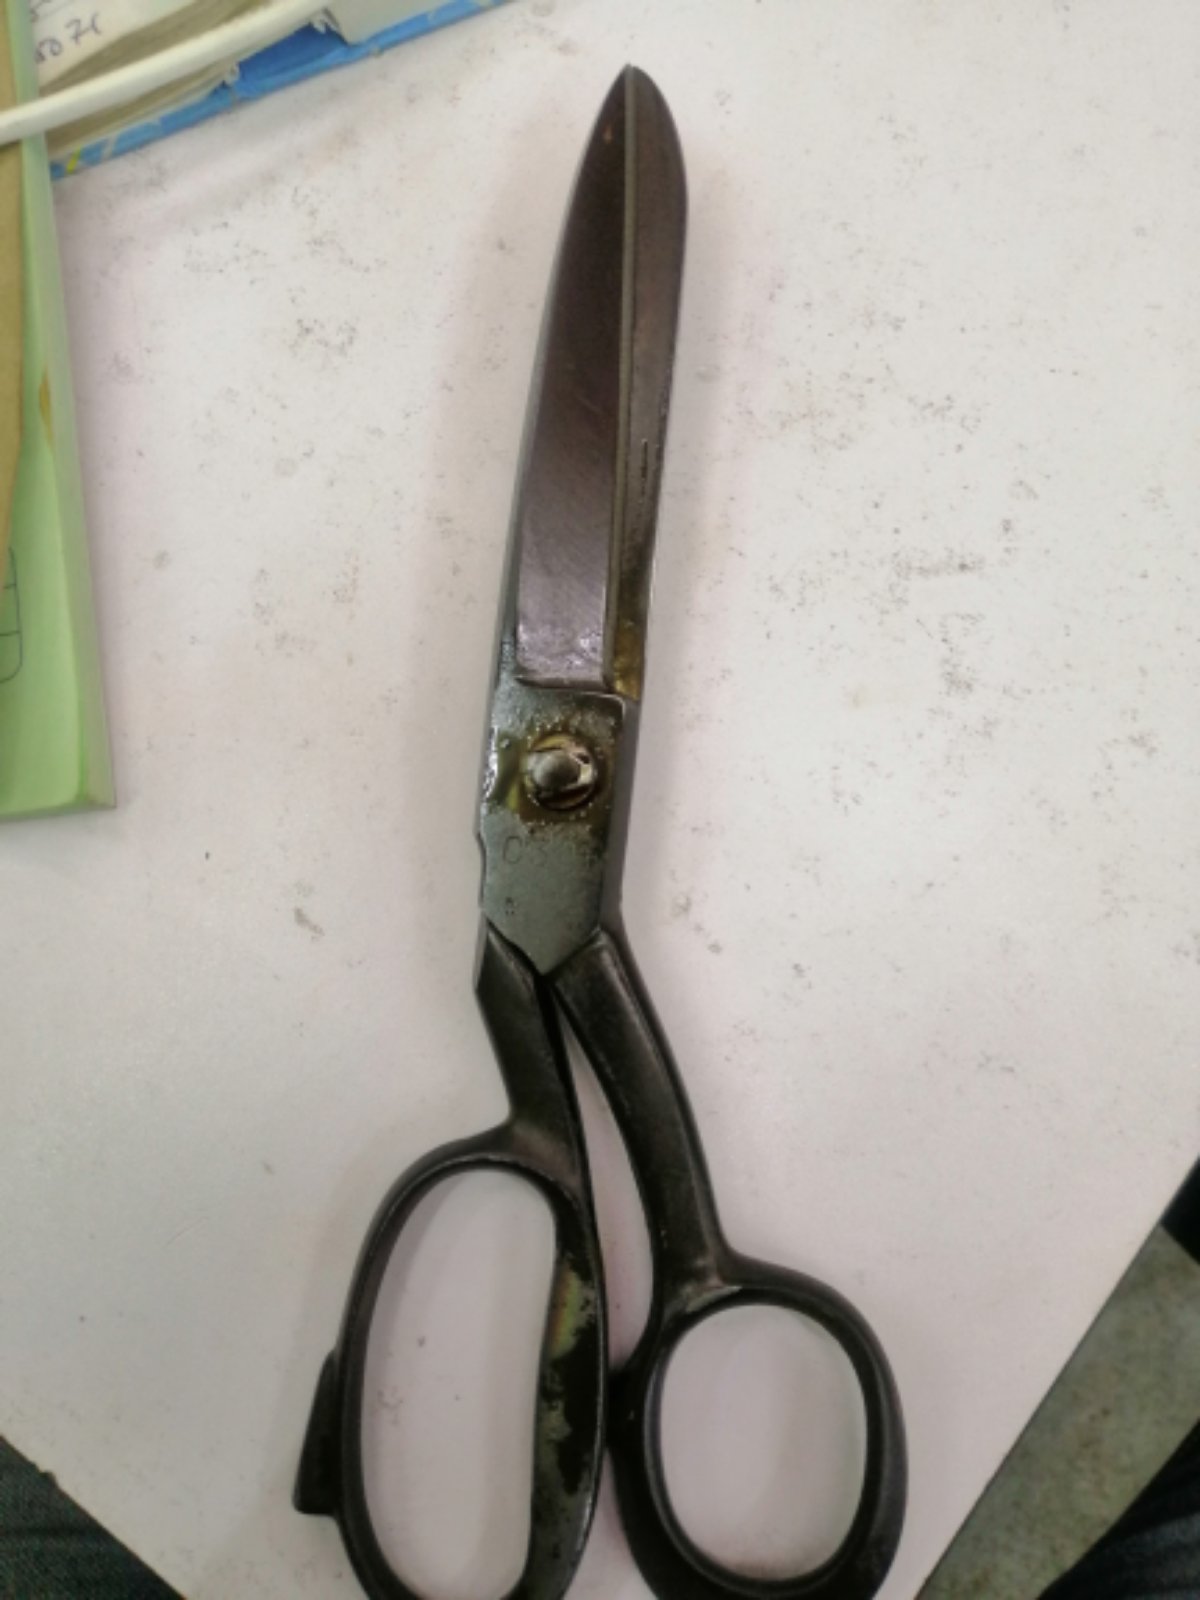 Grinding scissors